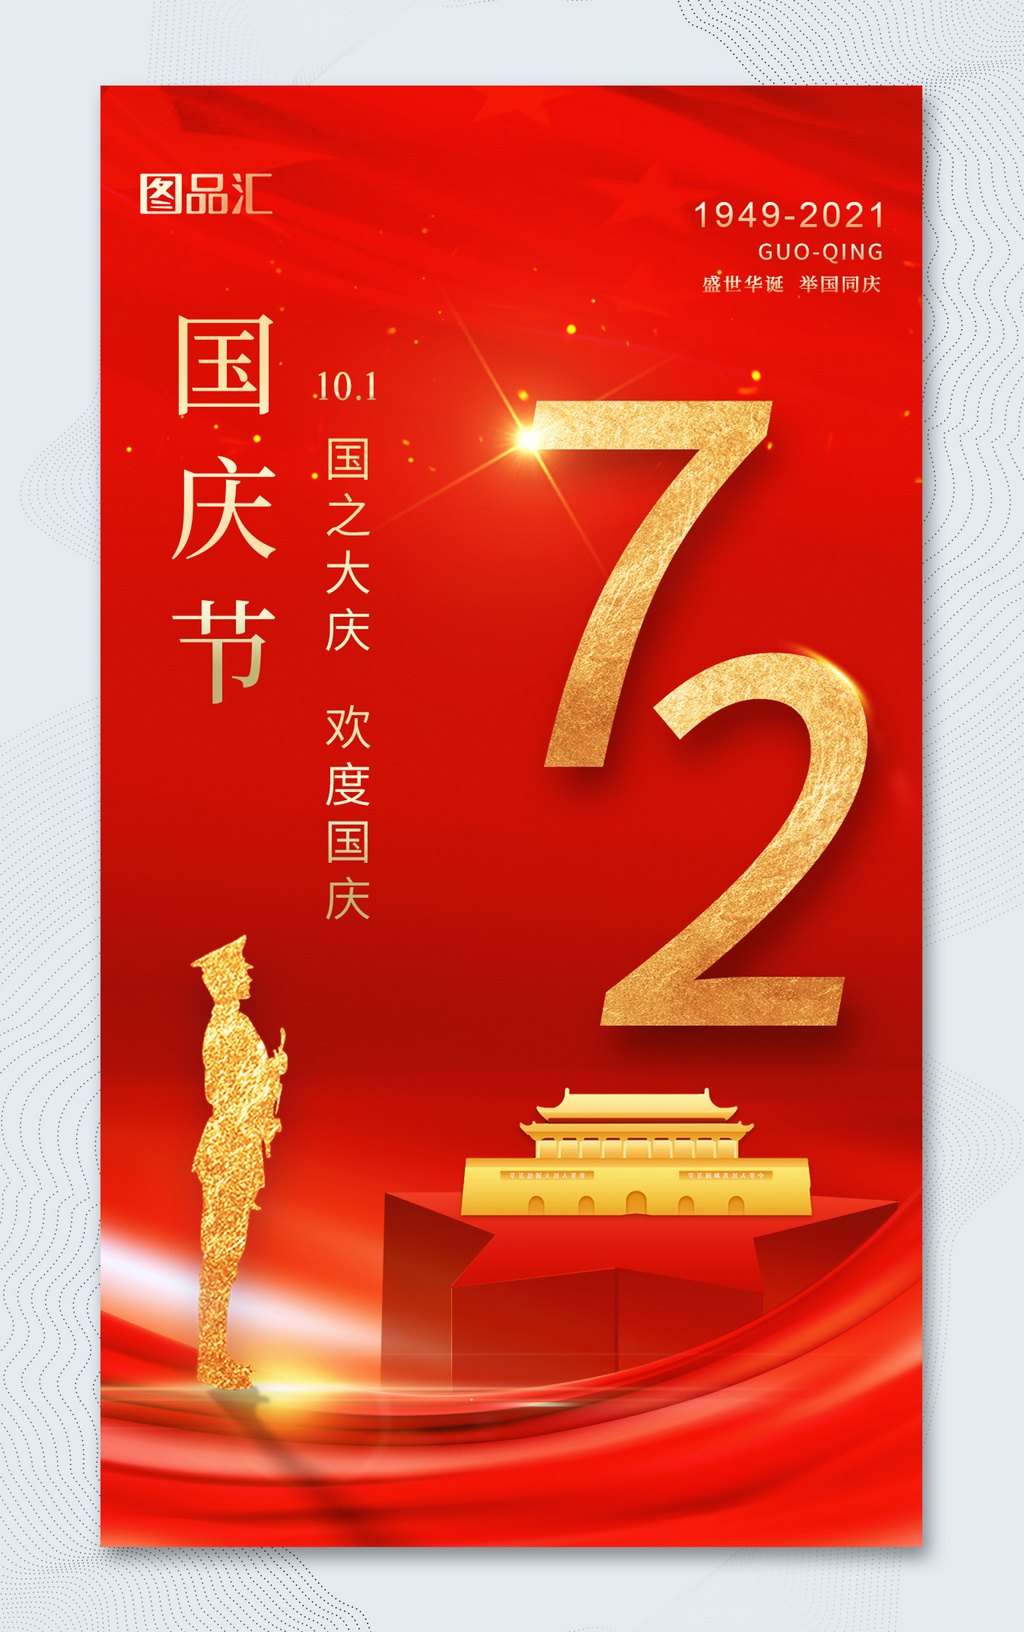 简约红色大气10.1国庆节72周年宣传海报